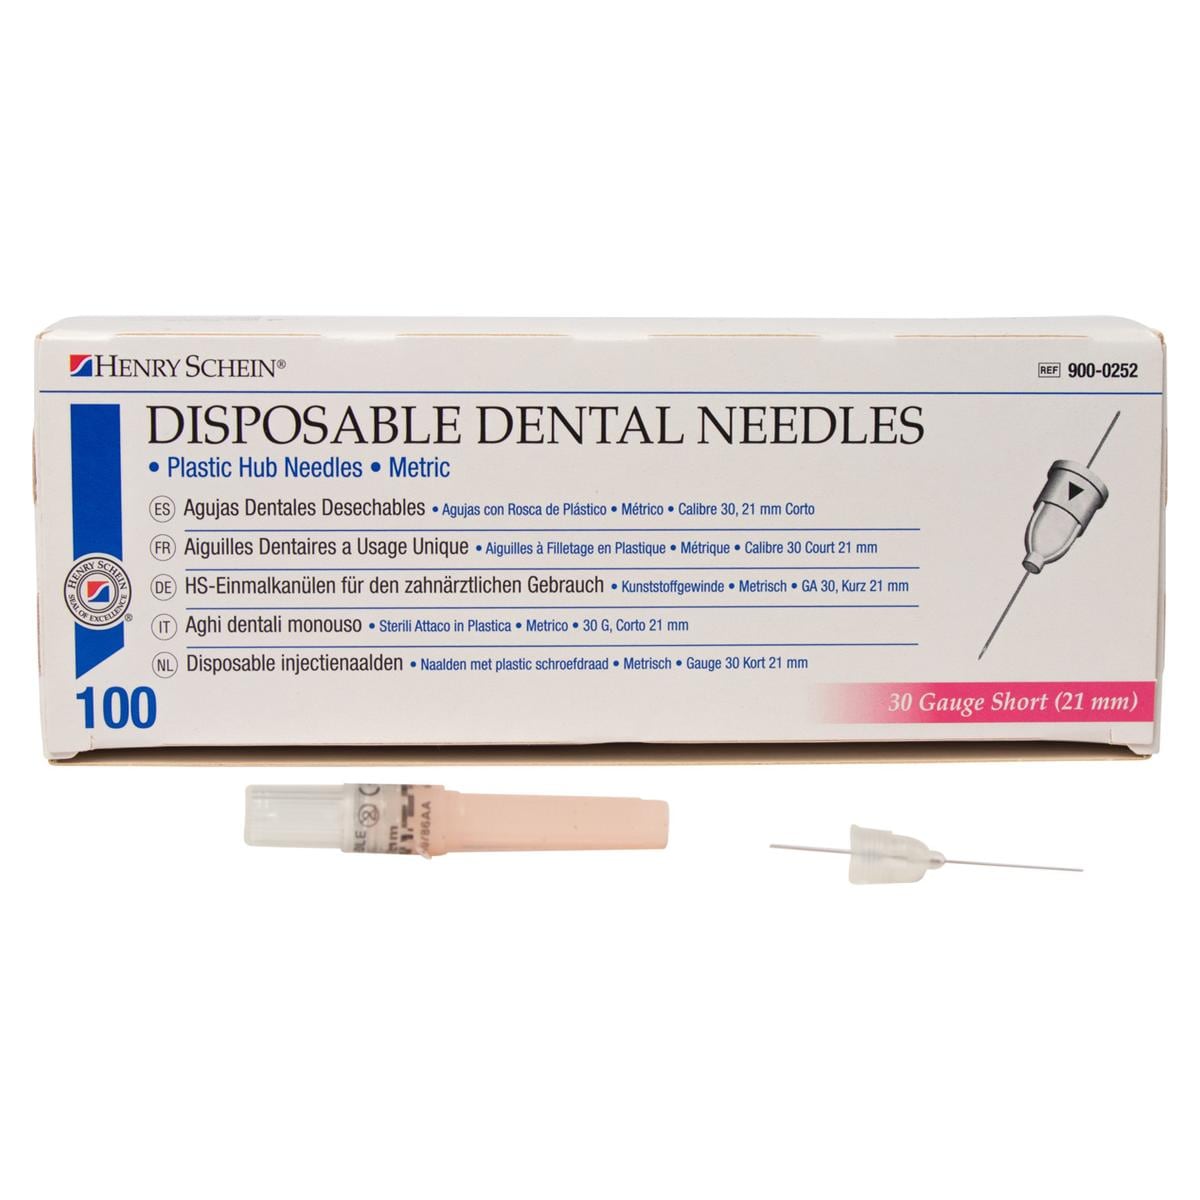 HS-Injektionskanülen, Disposable Dental Needles - Pink - 30G, 0,3 x 21 mm, kurz, Packung 100 Stück